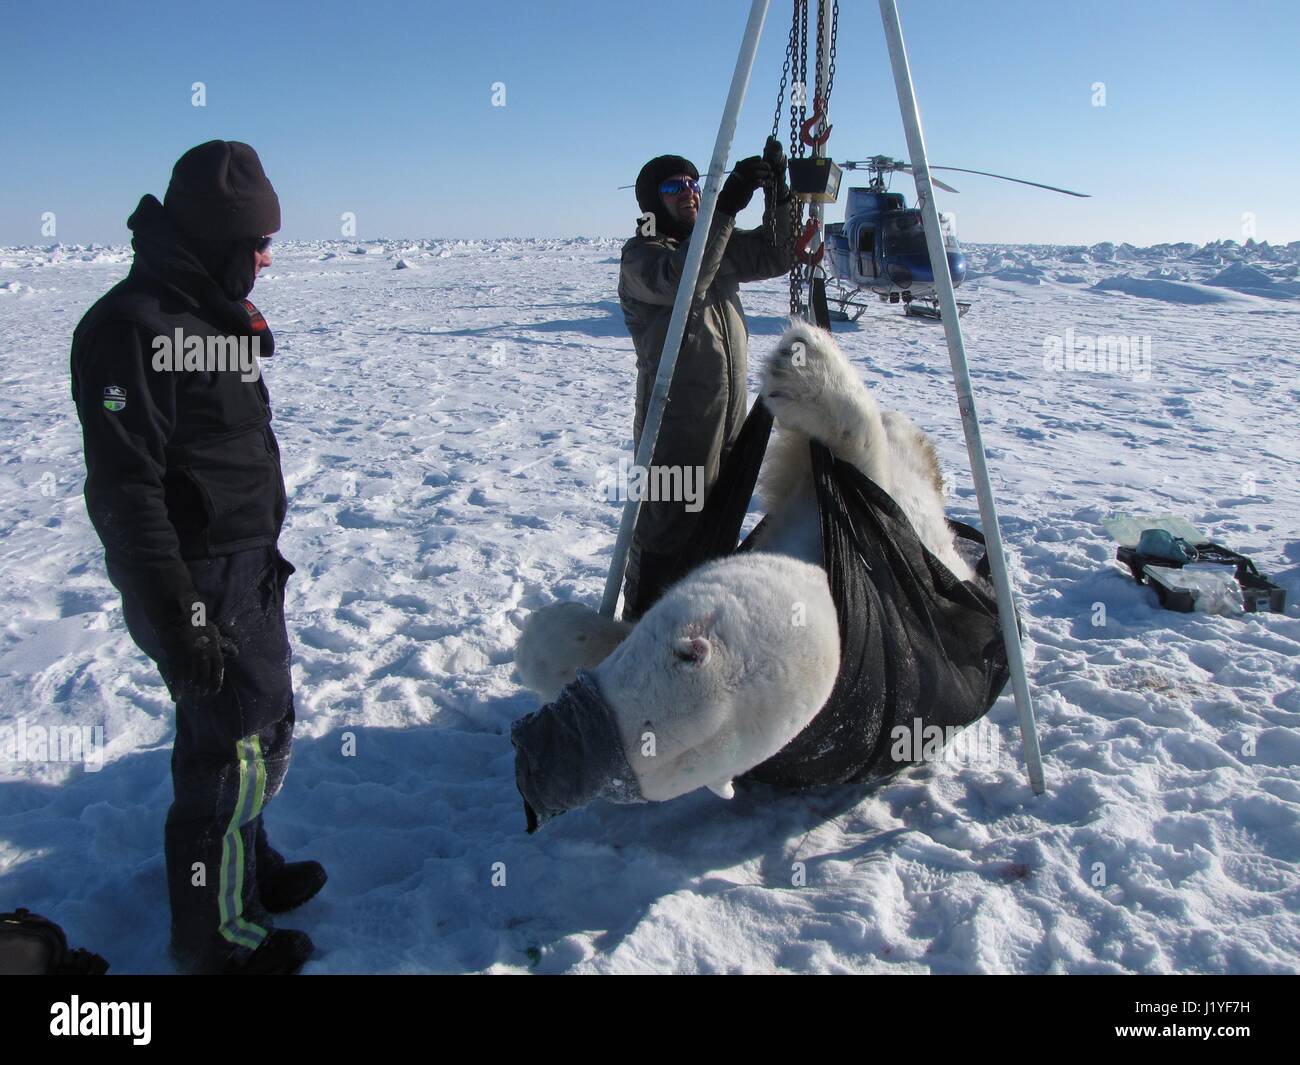 Les biologistes peser un ours polaire sous sédation à l'assemblée annuelle de l'étude de l'ours polaire sur la mer de Tchoukotka, 22 avril 2017 en Alaska. Ours sous sédation service après environ une heure et reprendre leur vie sur la glace de mer. Banque D'Images